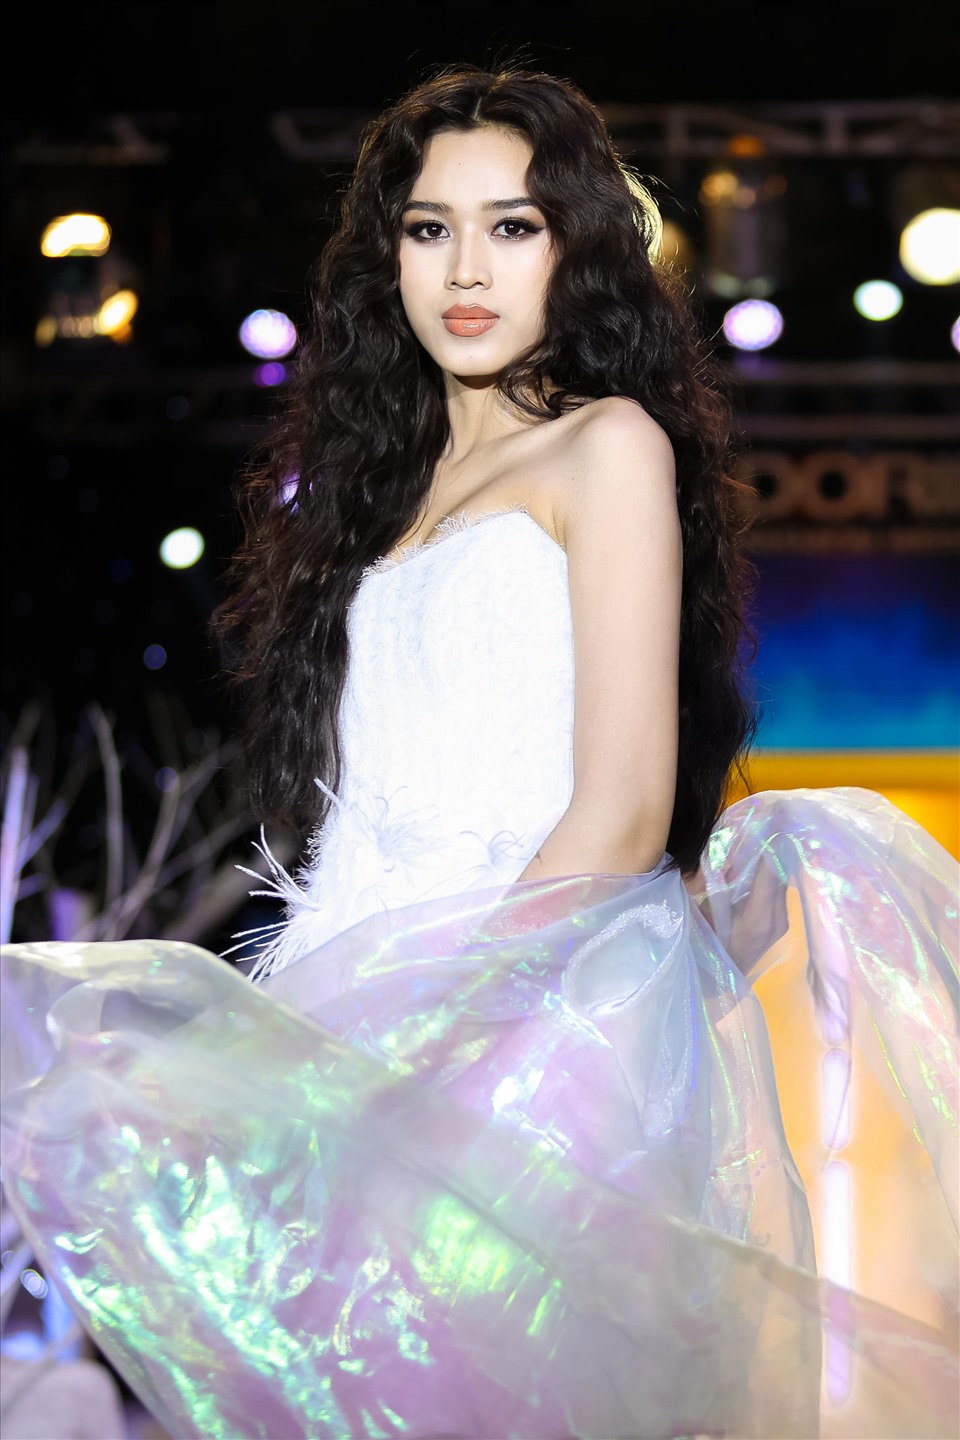 Hoa hậu Đỗ Thị Hà diện thiết kế đồng điệu với Lương Thuỳ Linh. Cô gây ấn tượng với mái tóc dài uốn xoăn bồng bềnh.